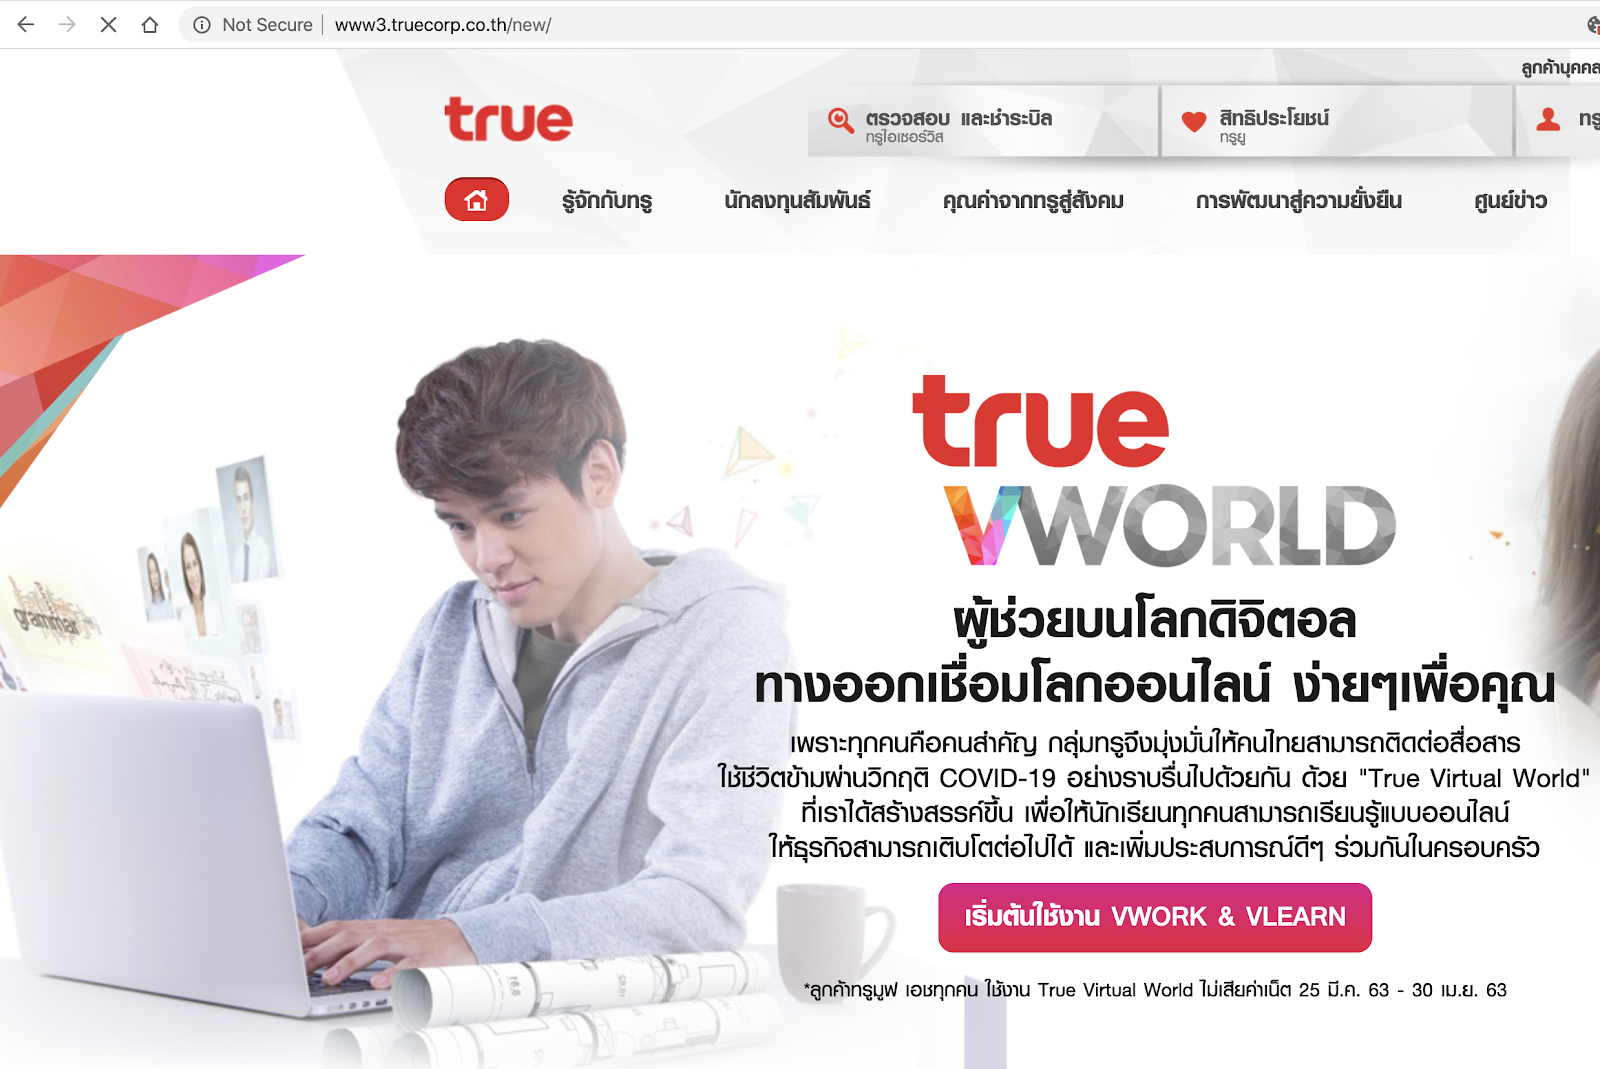 Компания True Corporation Plc (True) из Таиланда выбрала Ericsson в качестве поставщика сети